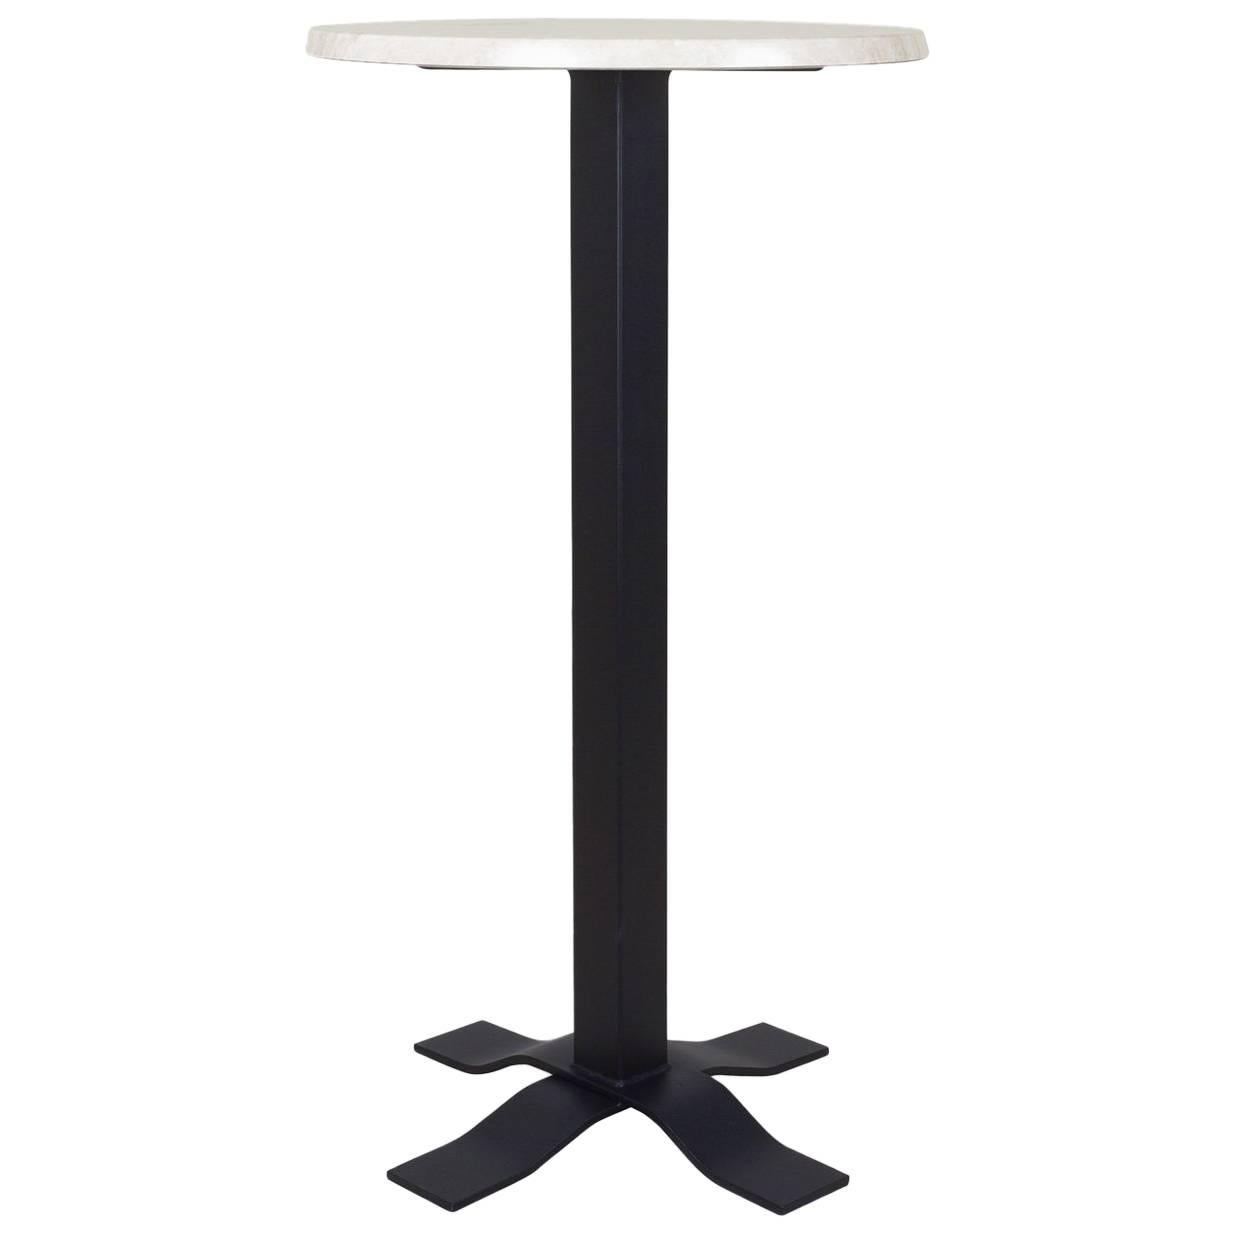 Table haute Bistro en fer forgé avec plateau en marbre. Extérieur et extérieur